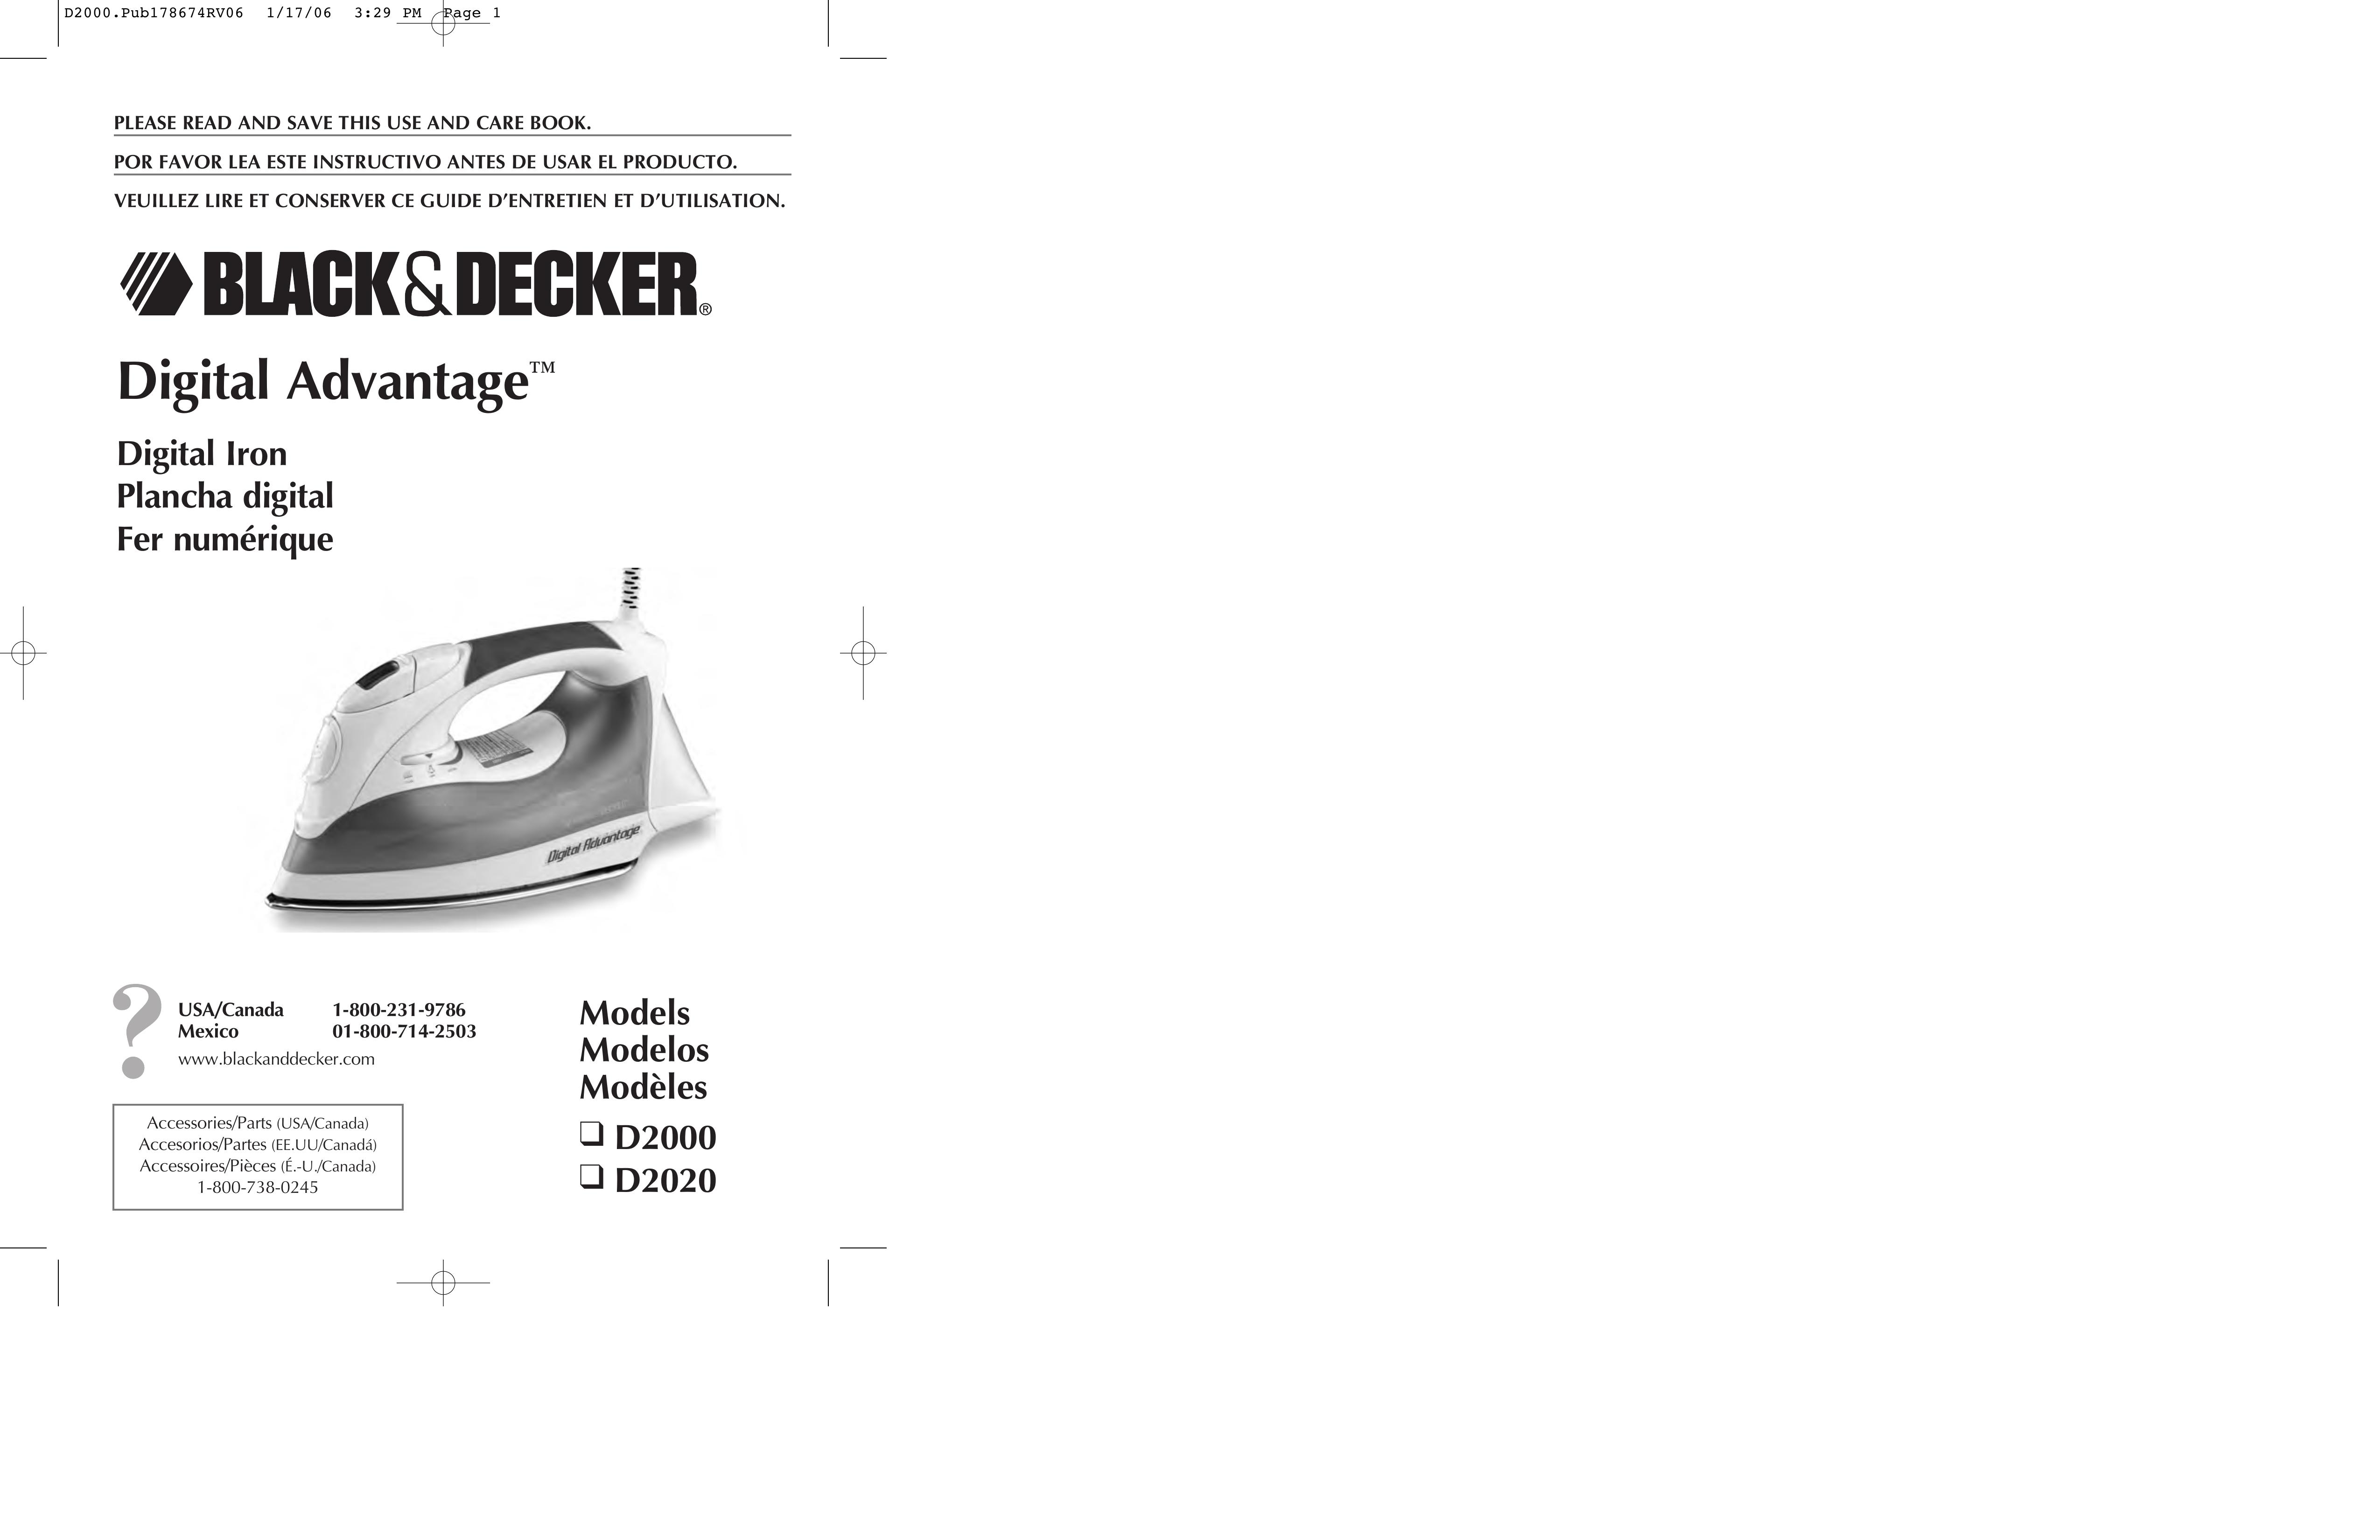 Black & Decker D2000 Iron User Manual